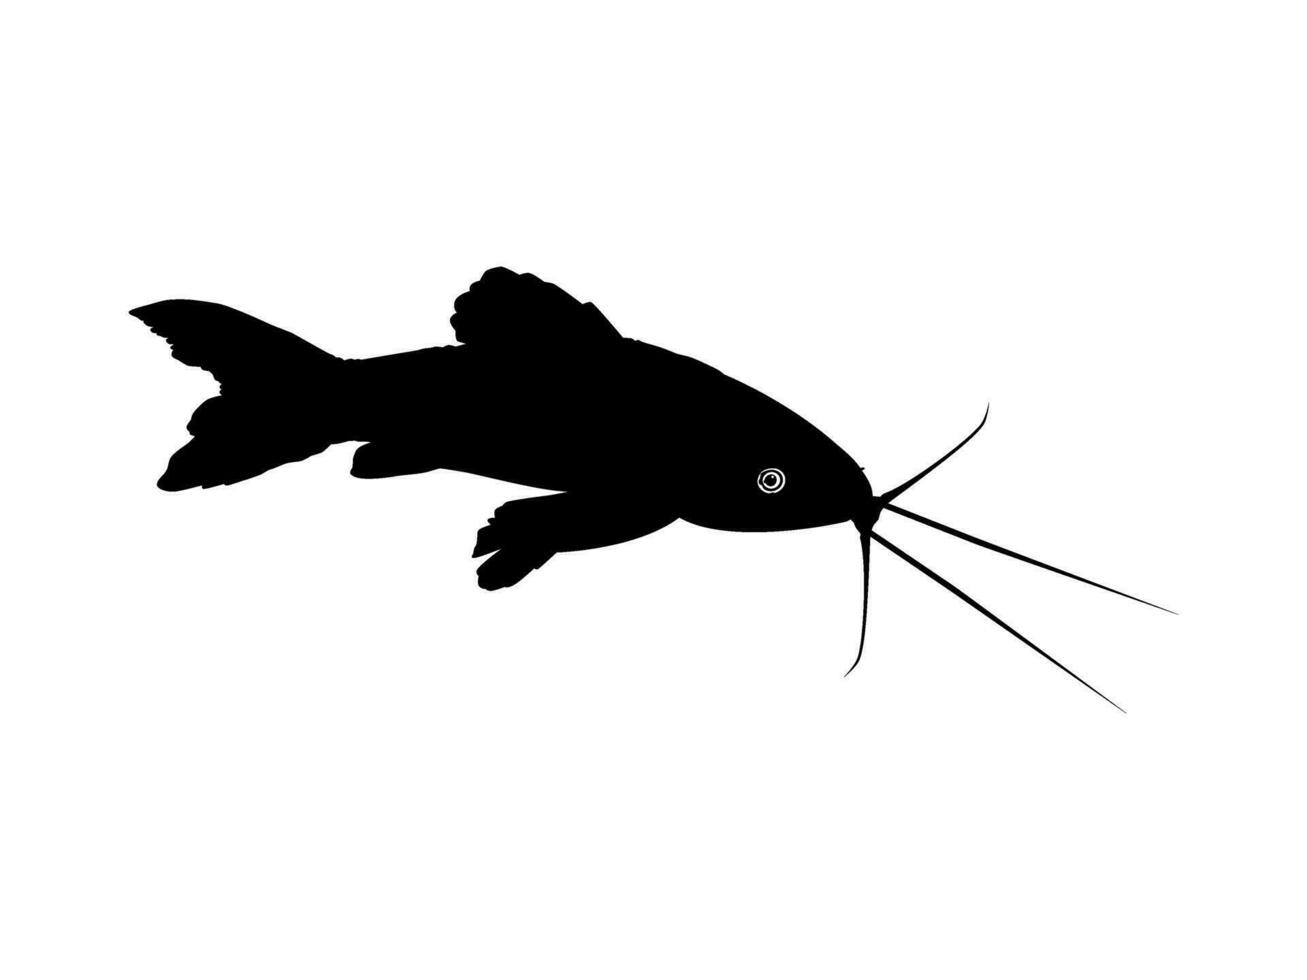 silhueta do a a kwi kwi ou hoplosterno litoral é uma espécies do blindado peixe-gato a partir de a callichthyidae família. vetor ilustração